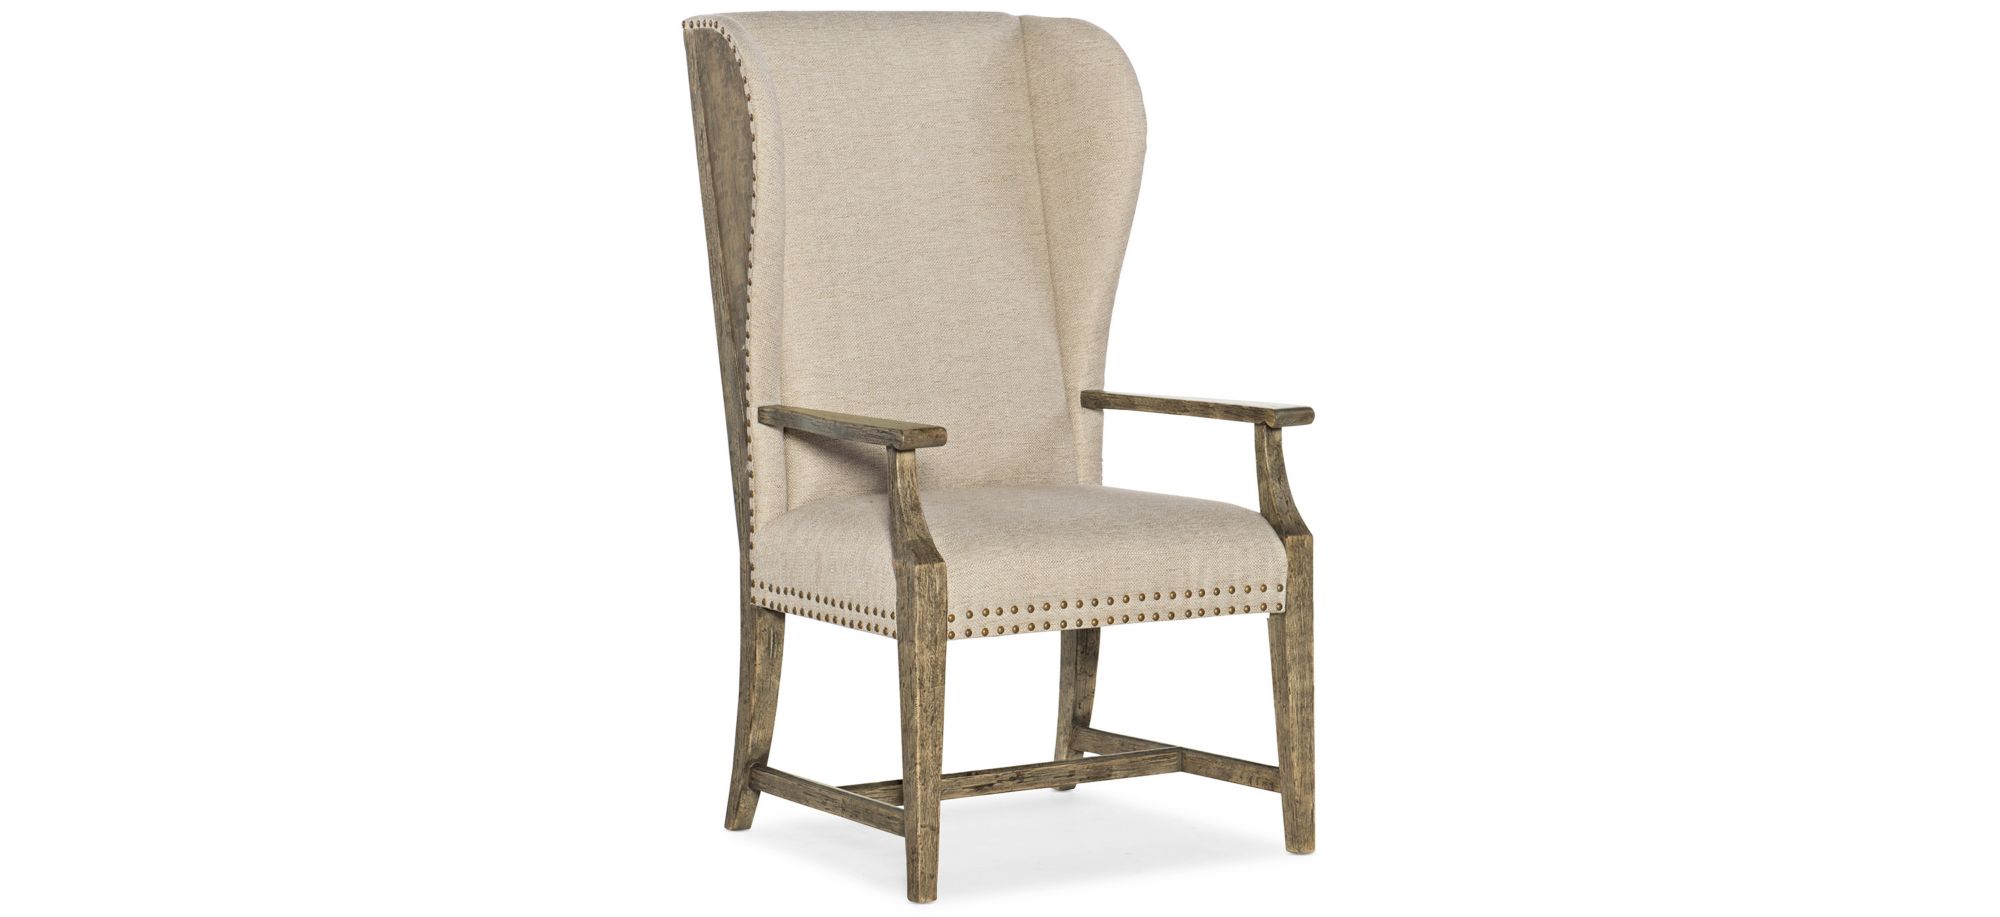 La Grange West Point Host Chair in Barn Wood by Hooker Furniture